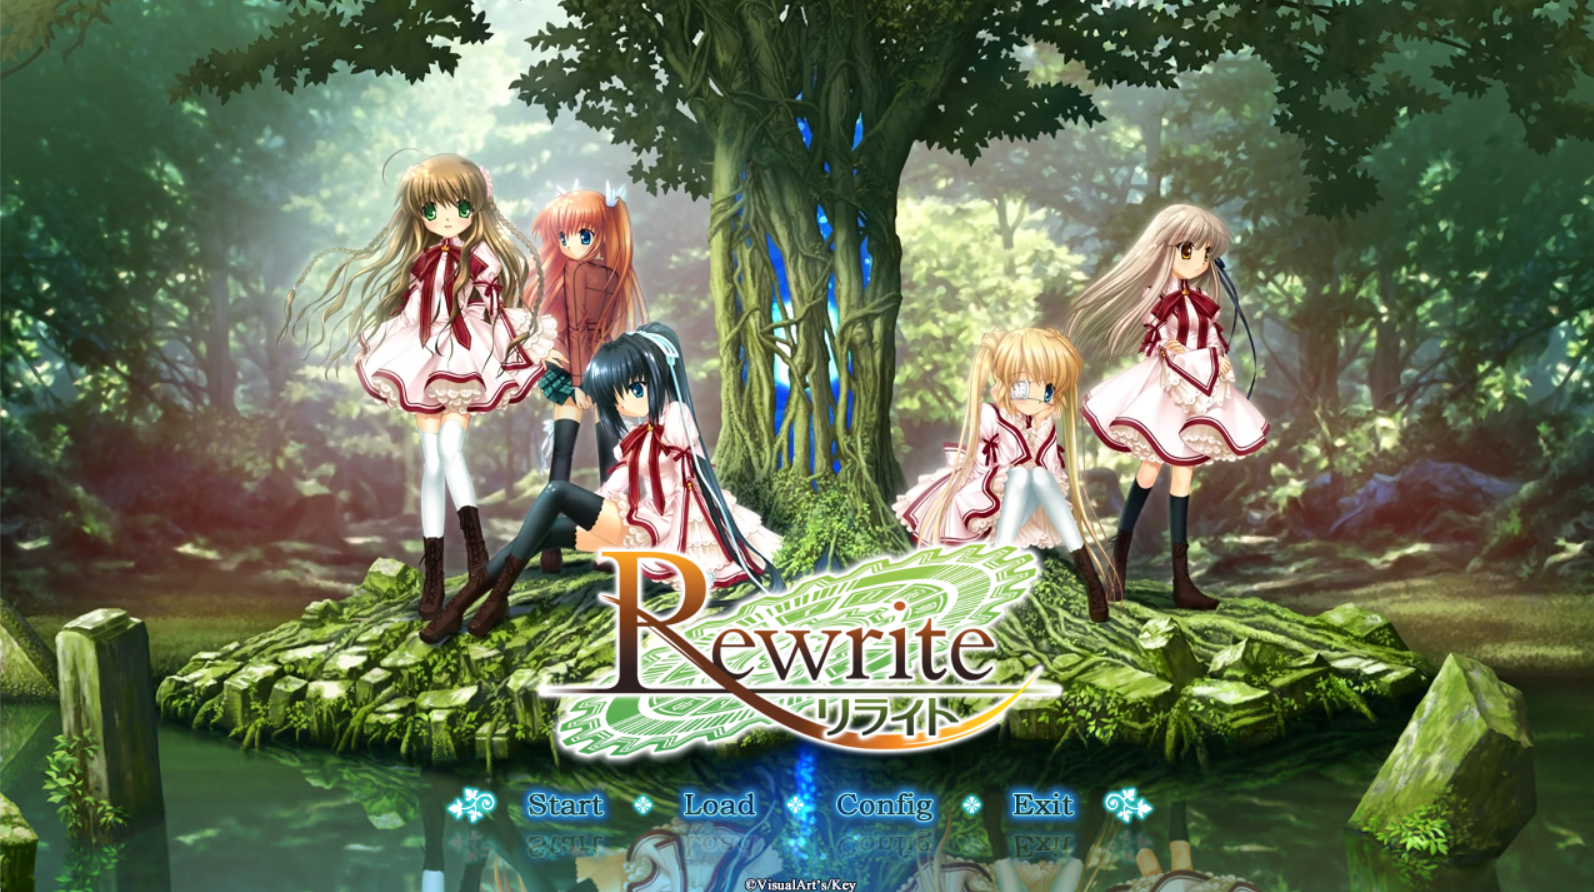 【Galgame】Rewrite合集 原版+HF+"Rewrite+" - 光坂小镇-光坂小镇